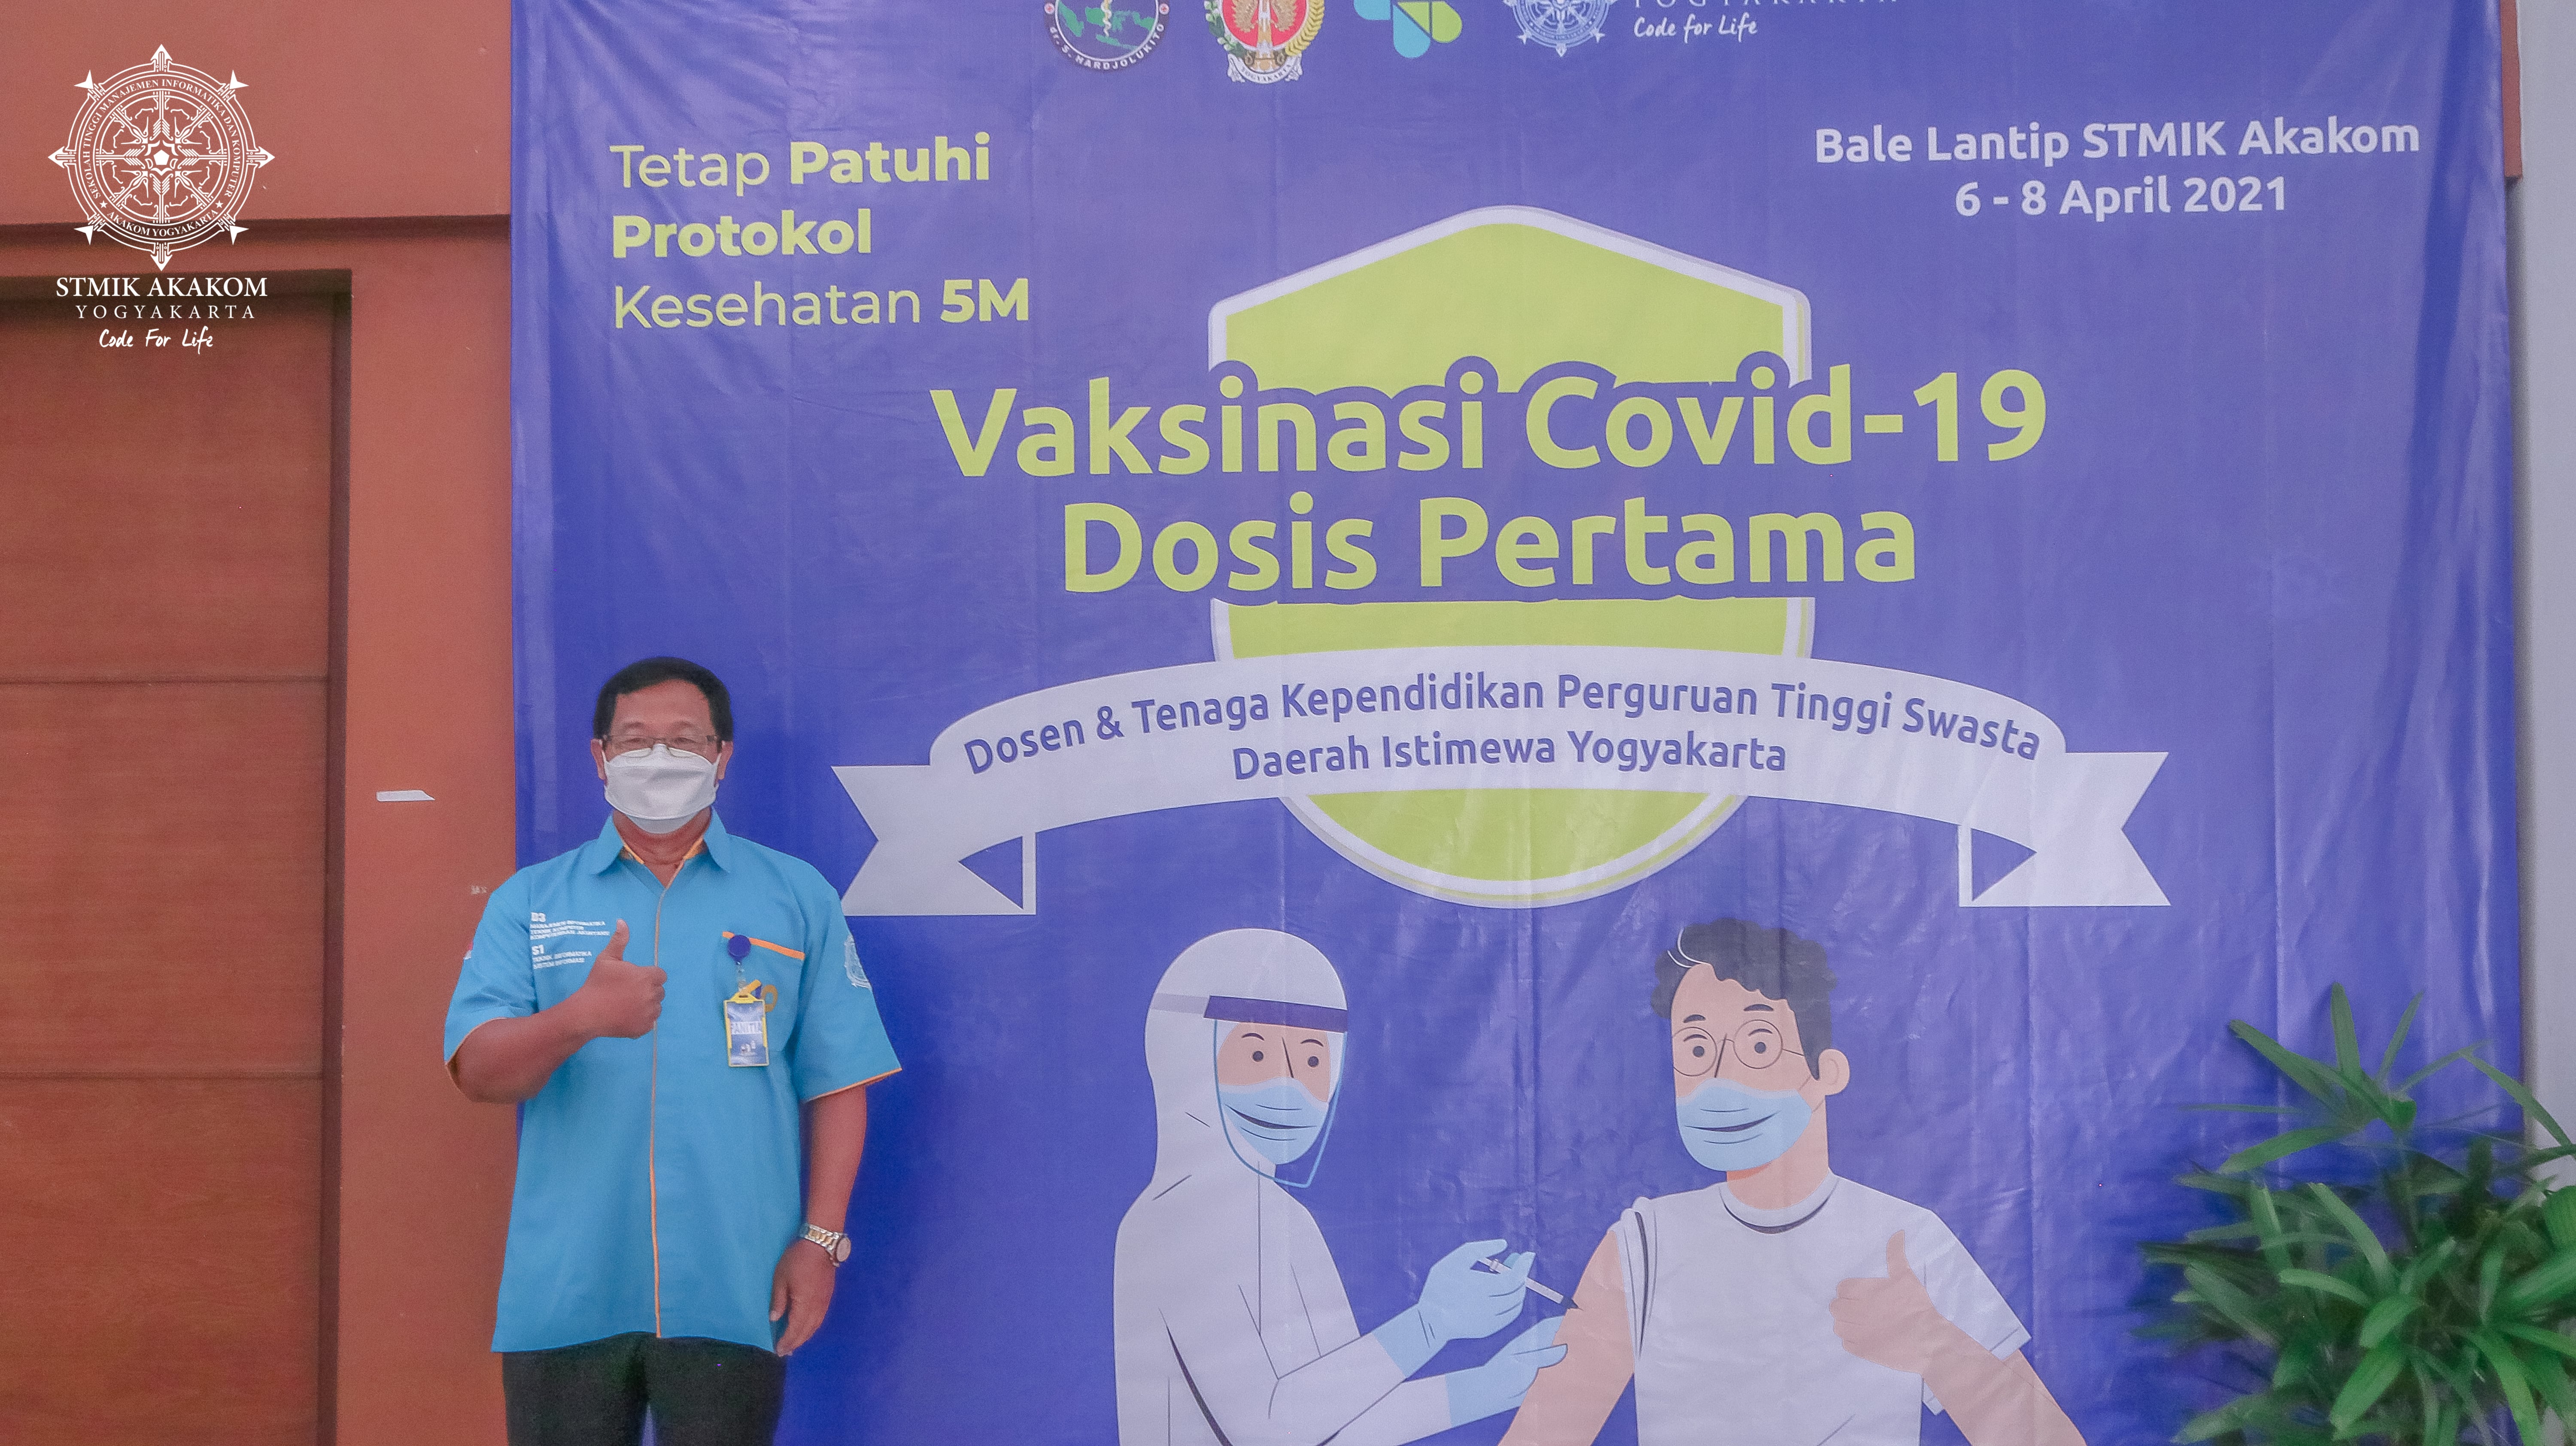 STMIK Akakom Jadi Koordinator Sekaligus Lokasi Vaksinasi Dosen dan Tenaga Kependidikan 29 PTS DIY